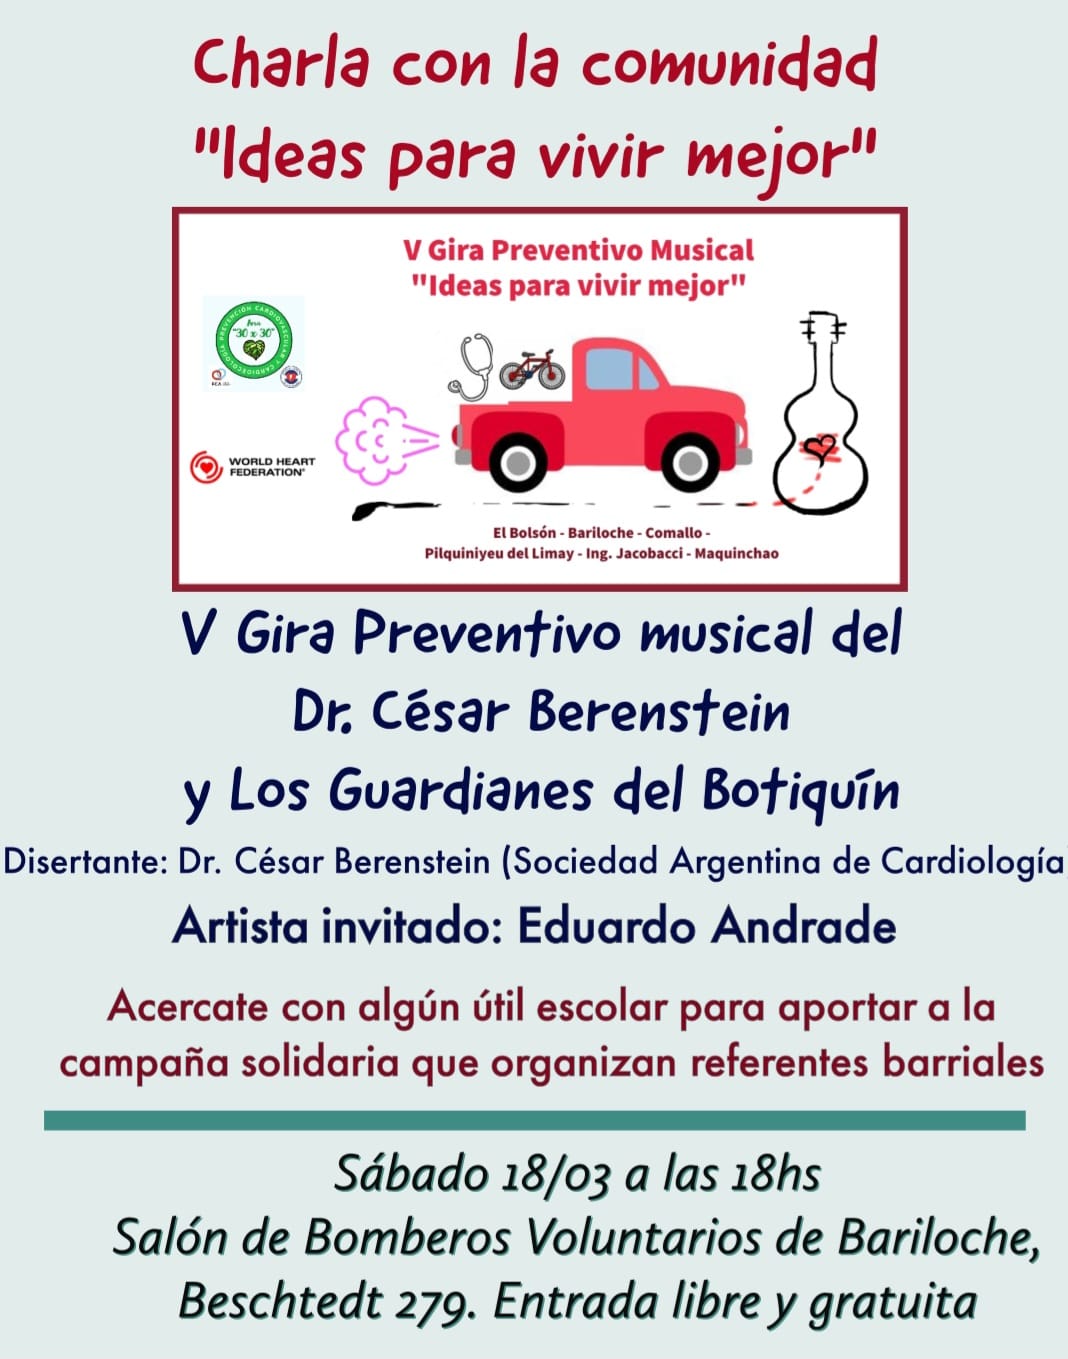 Invitan a la comunidad de Bariloche a la charla “Ideas para vivir mejor”